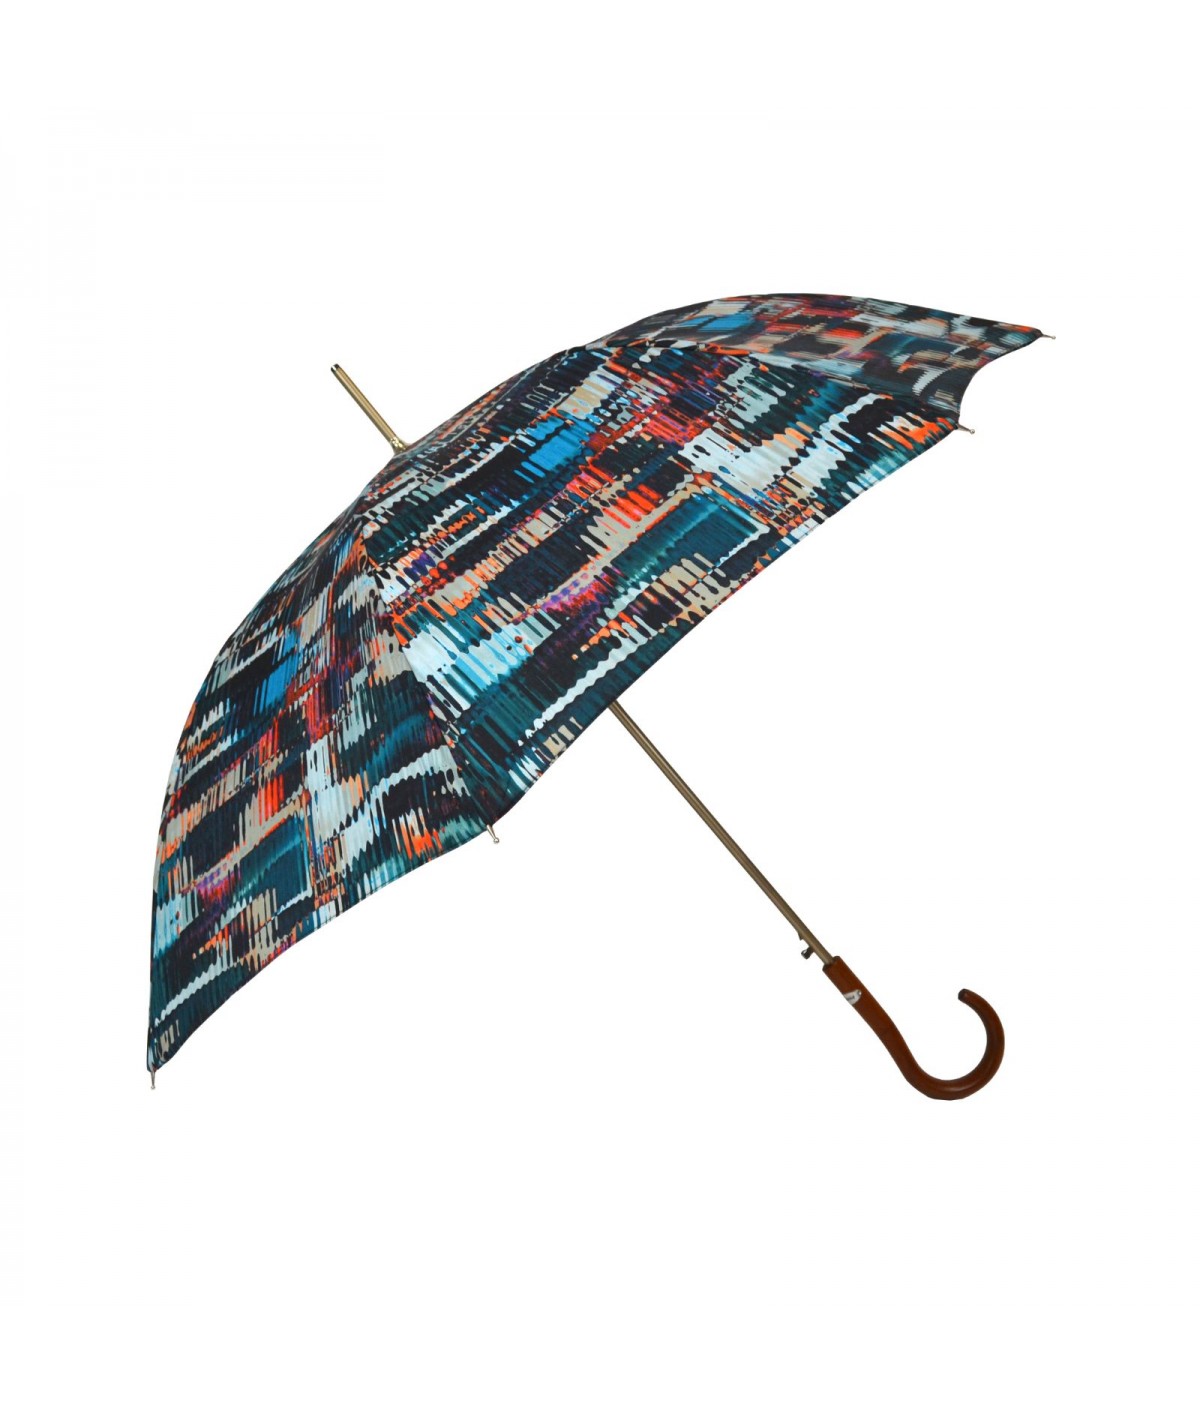 → Parapluie Imprimé Fantaisie - Long Automatique - Made in France par Maison Pierre Vaux Fabricant Français de Parapluie